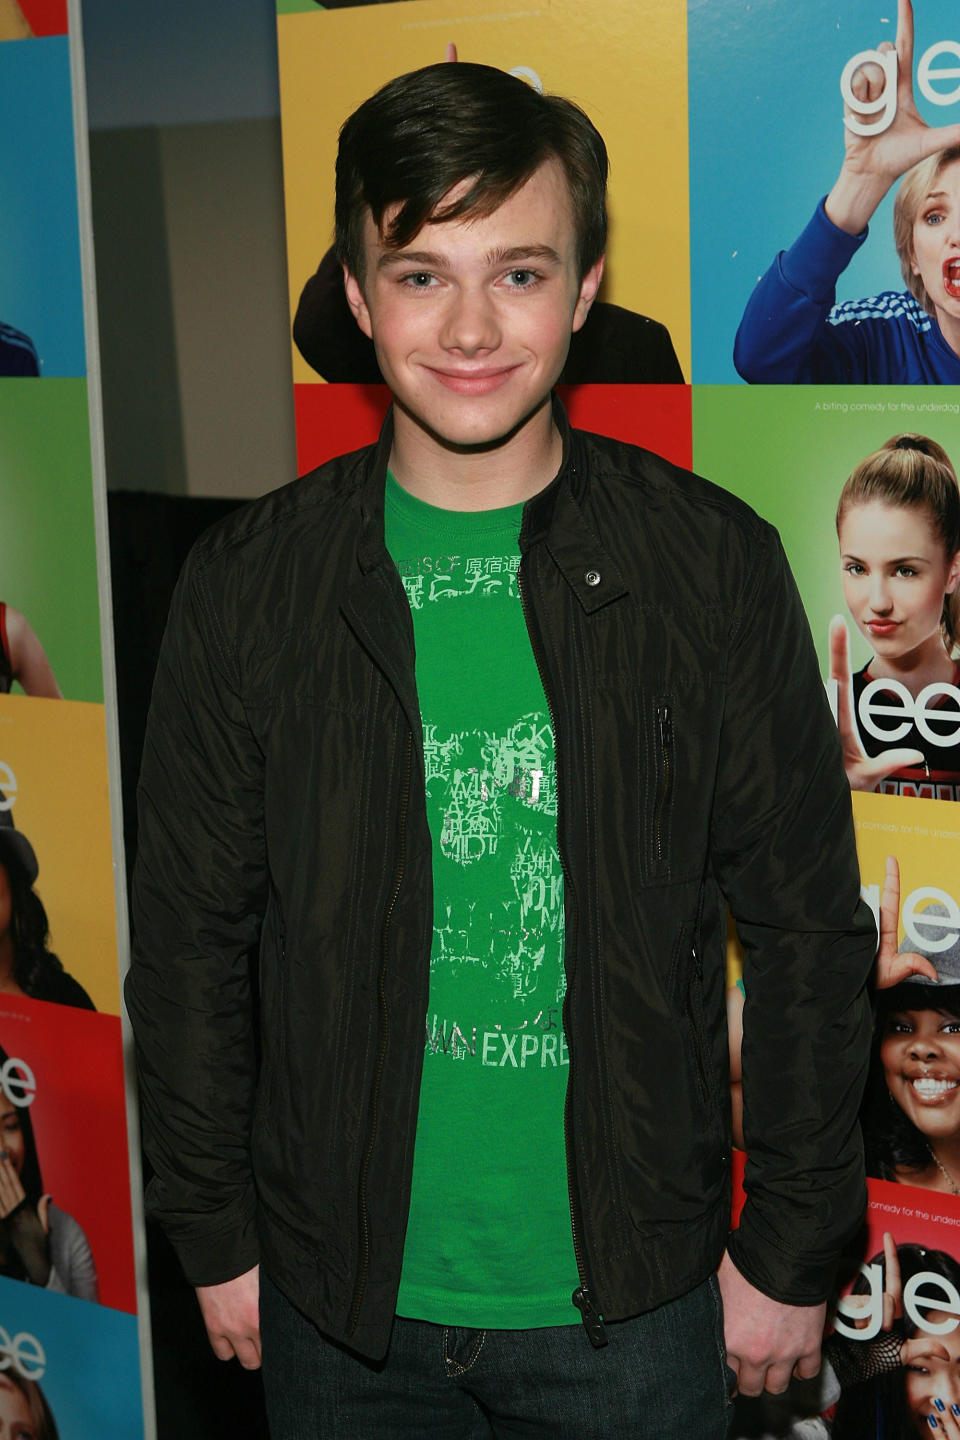 Chris lors d'un événement Glee